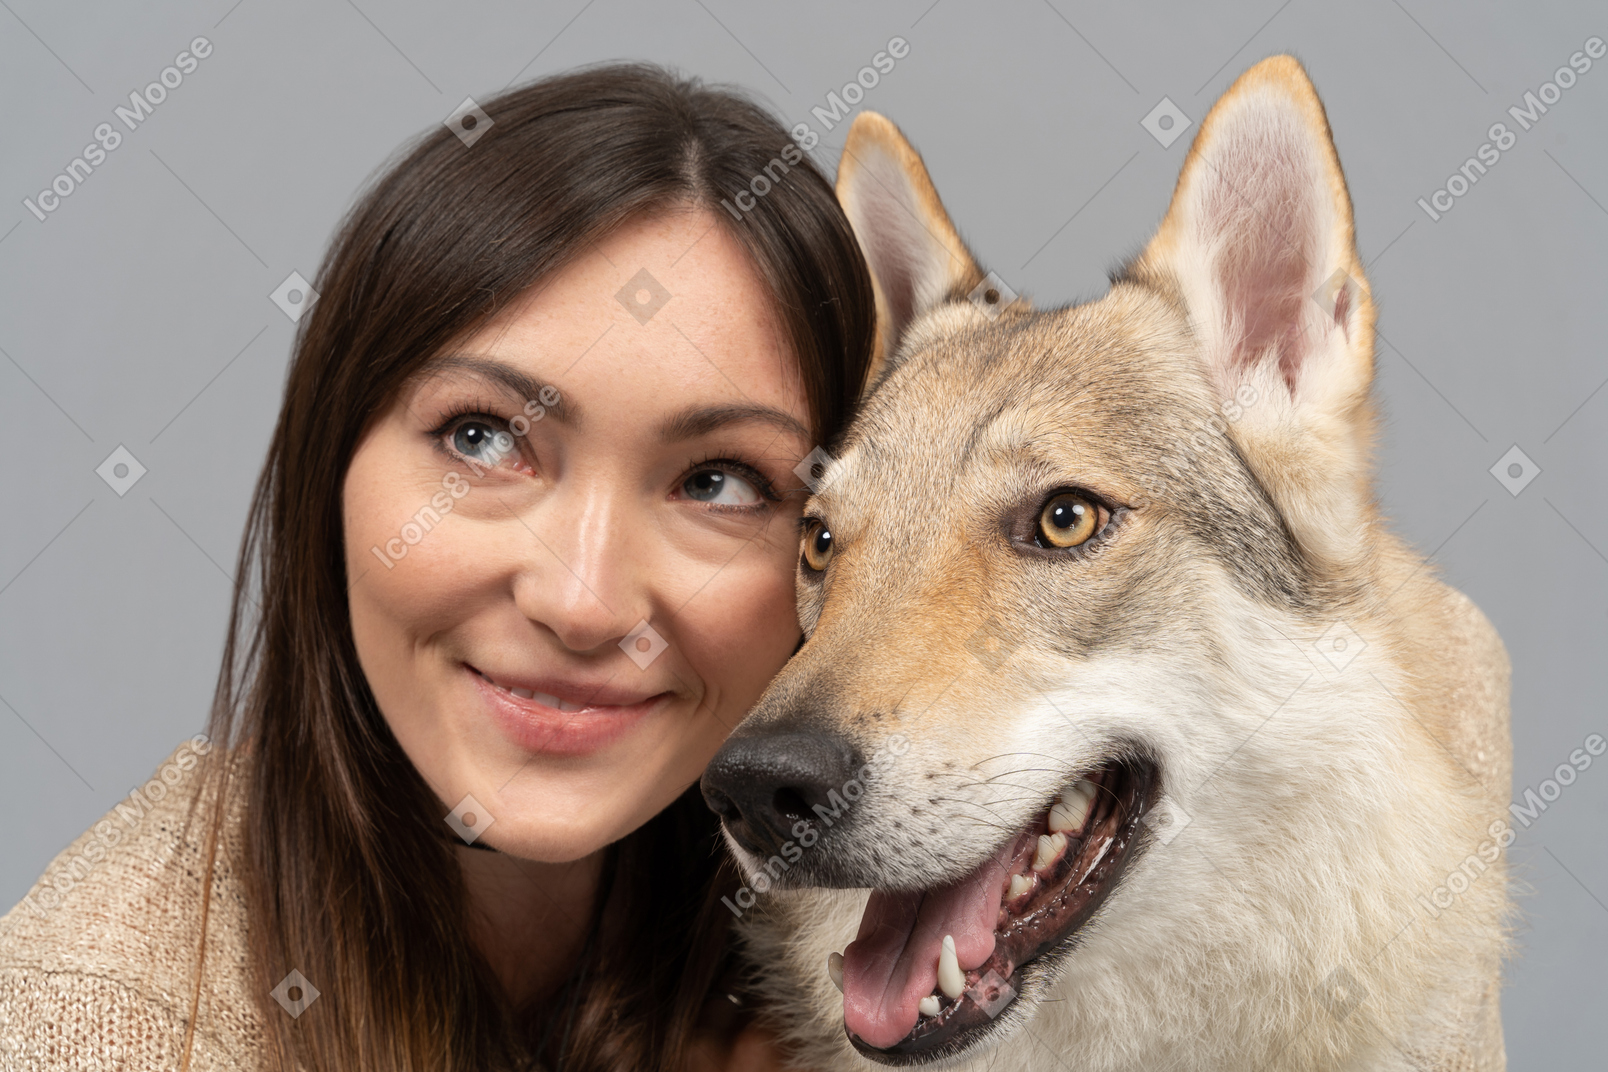 Mulher jovem sorridente, olhando de soslaio com um cachorro